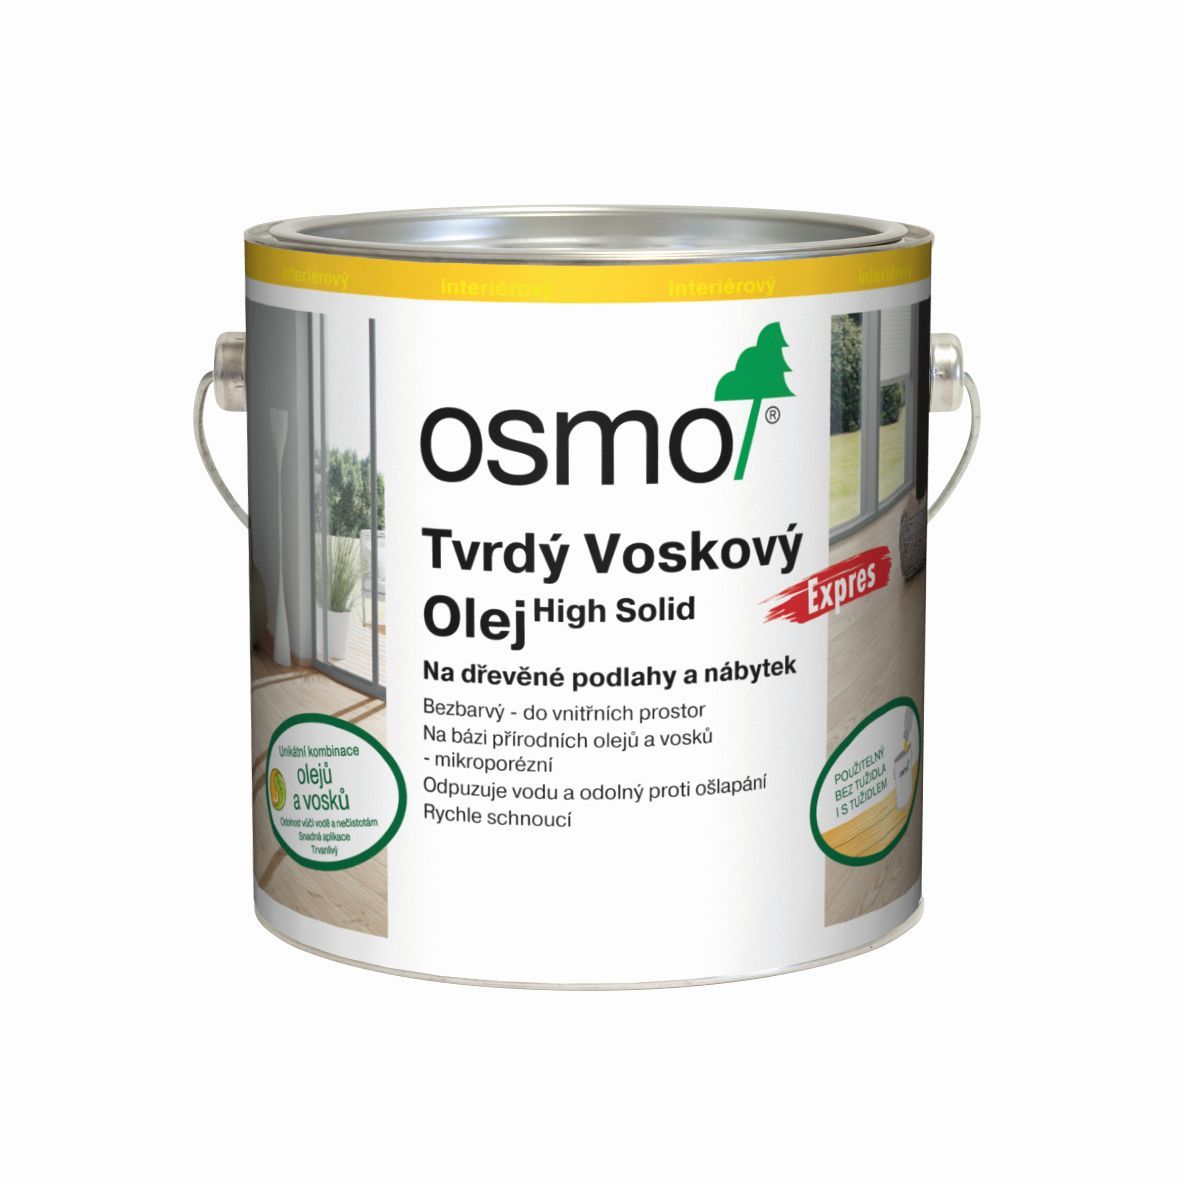 OSMO 3332 Tvrdý voskový olej Express Bezbarvý hedvábný polomat 0,75l